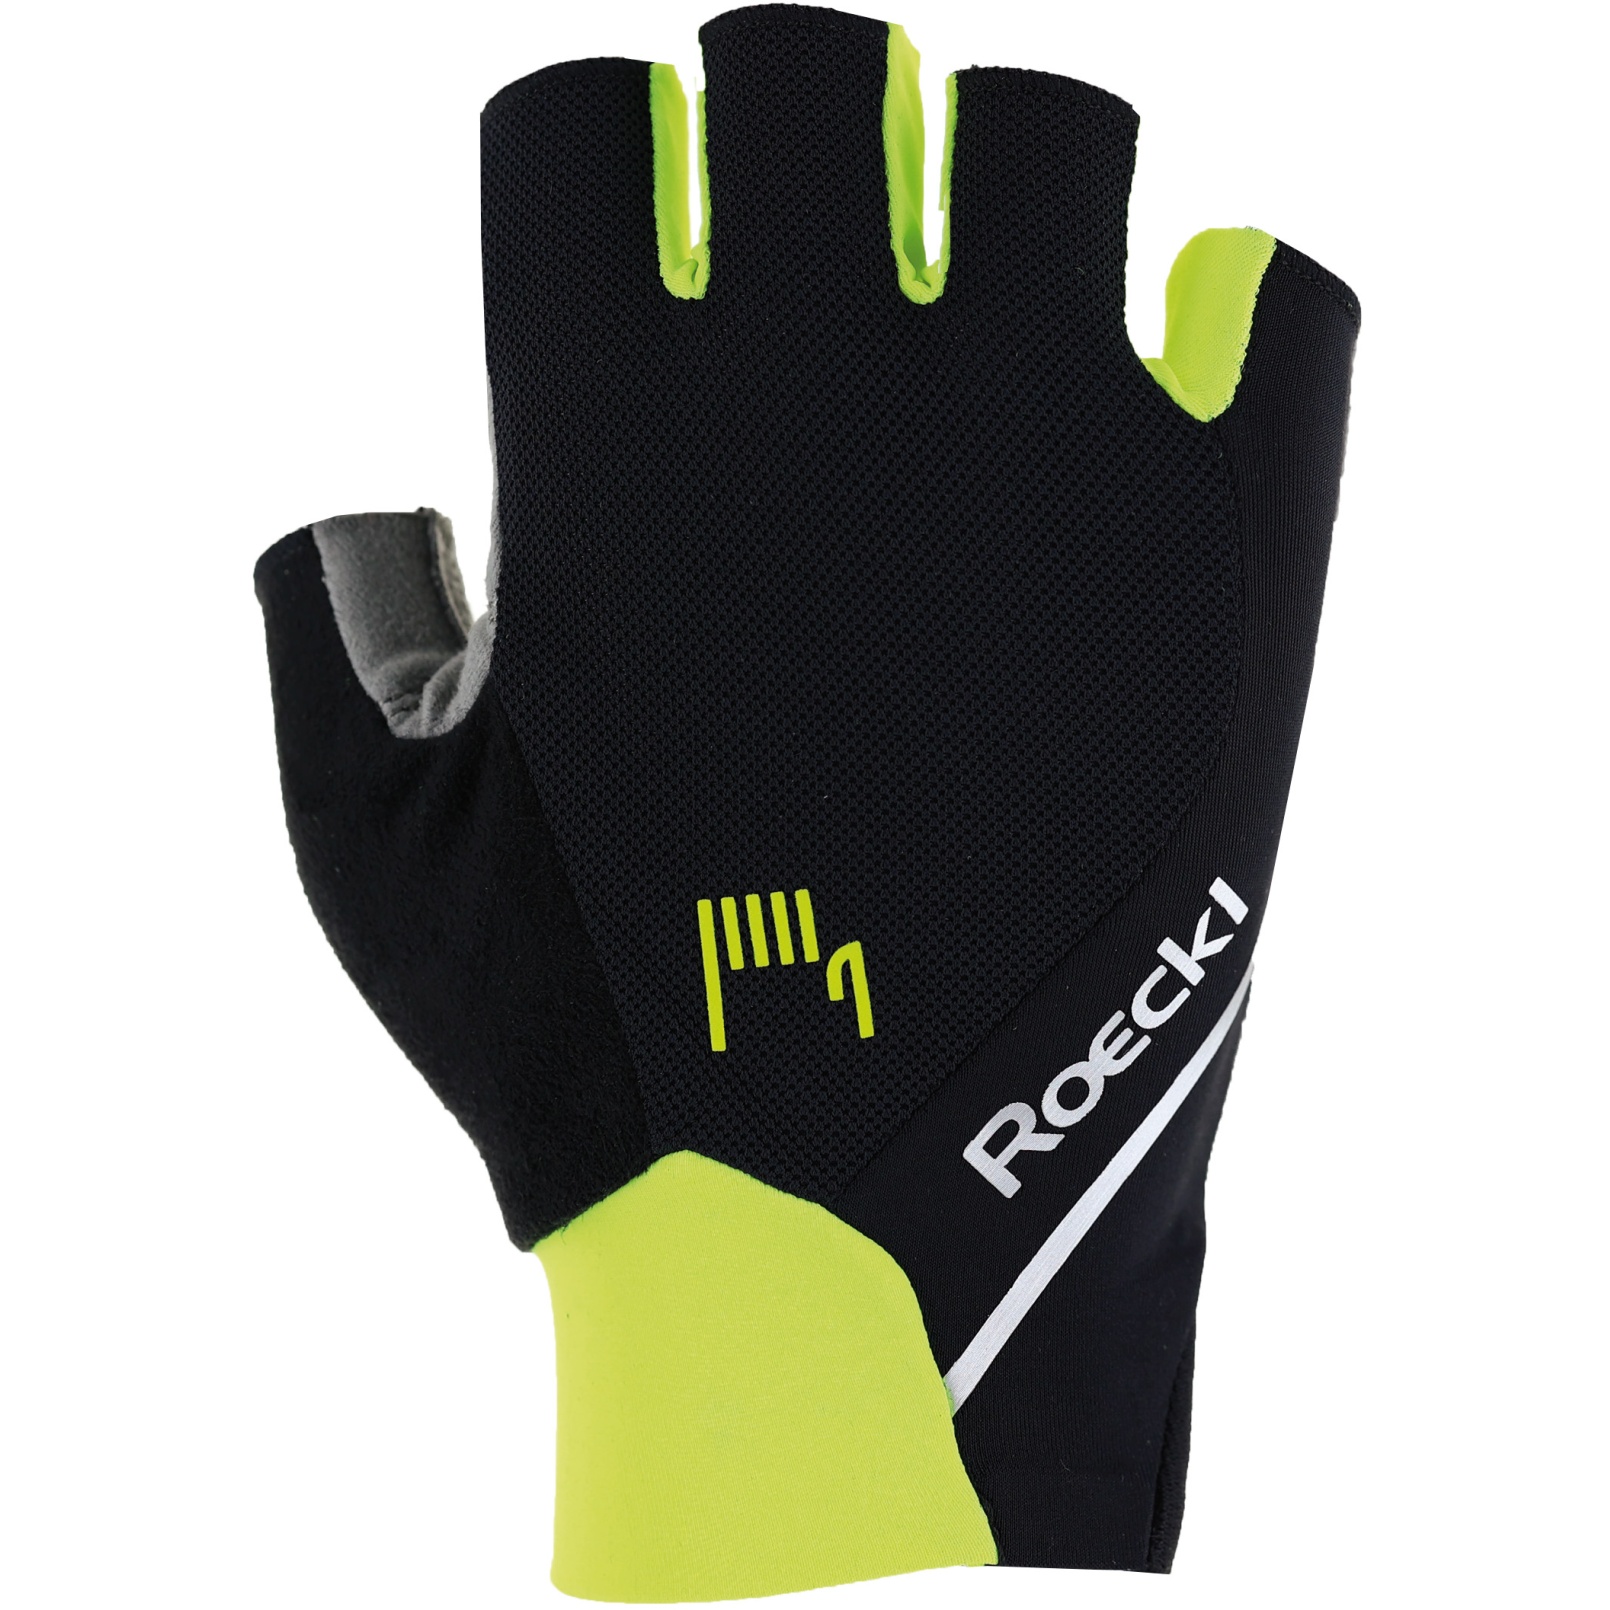 Productfoto van Roeckl Sports Ivory 2 Fietshandschoenen - black/fluo yellow 9210